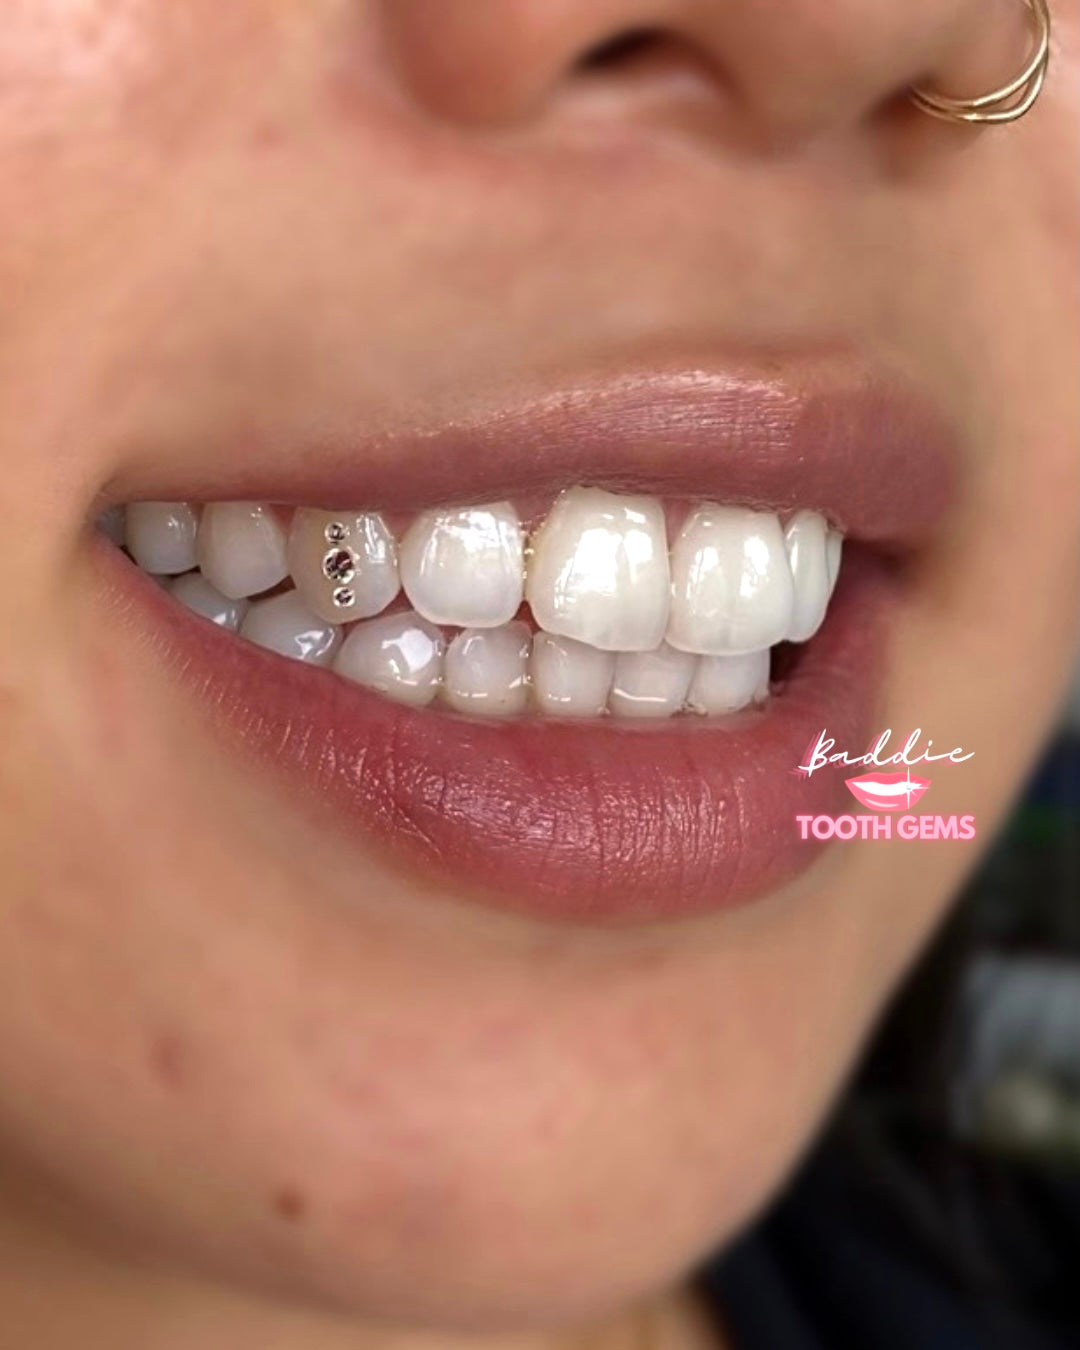 teeth gems - Zimbabwe